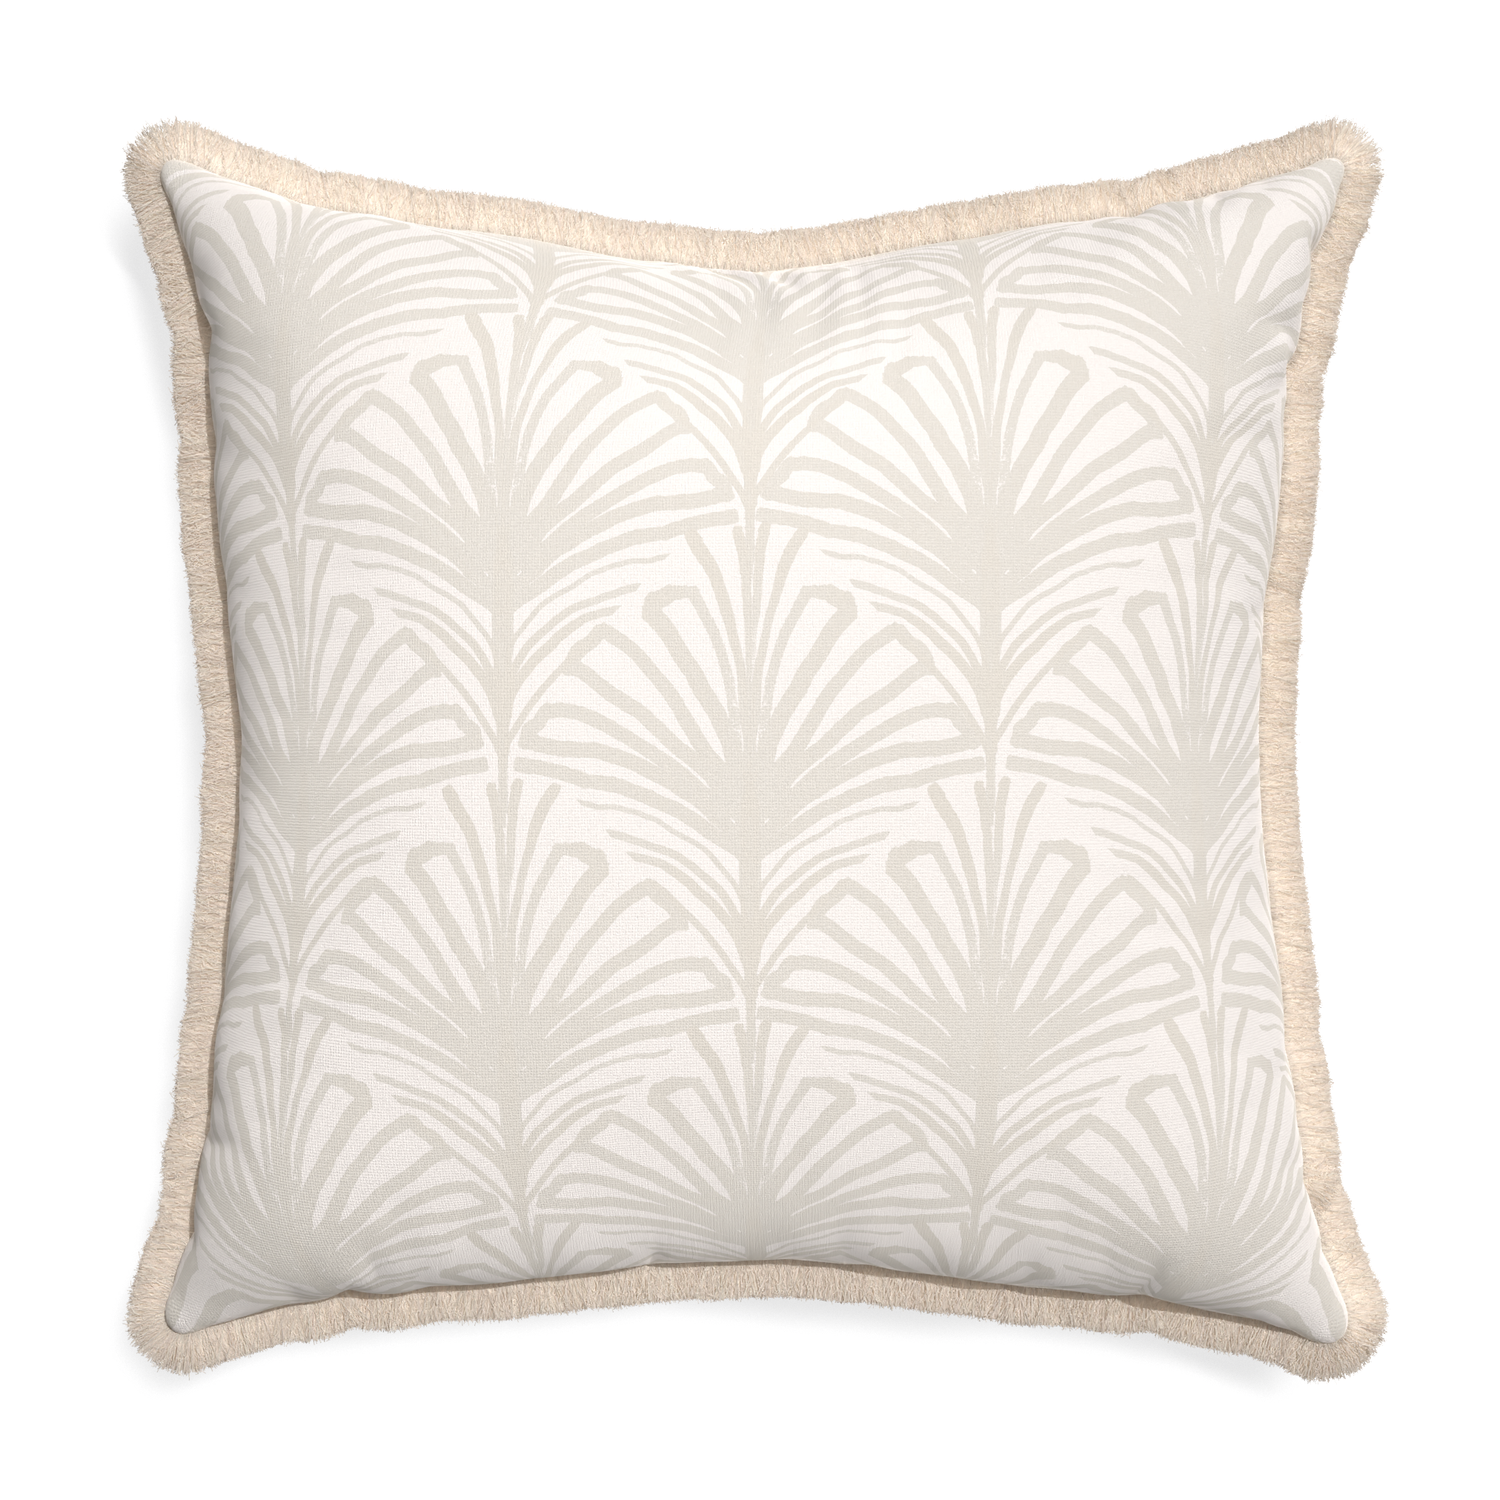 Euro-sham suzy sand custom pillow with cream fringe on white background